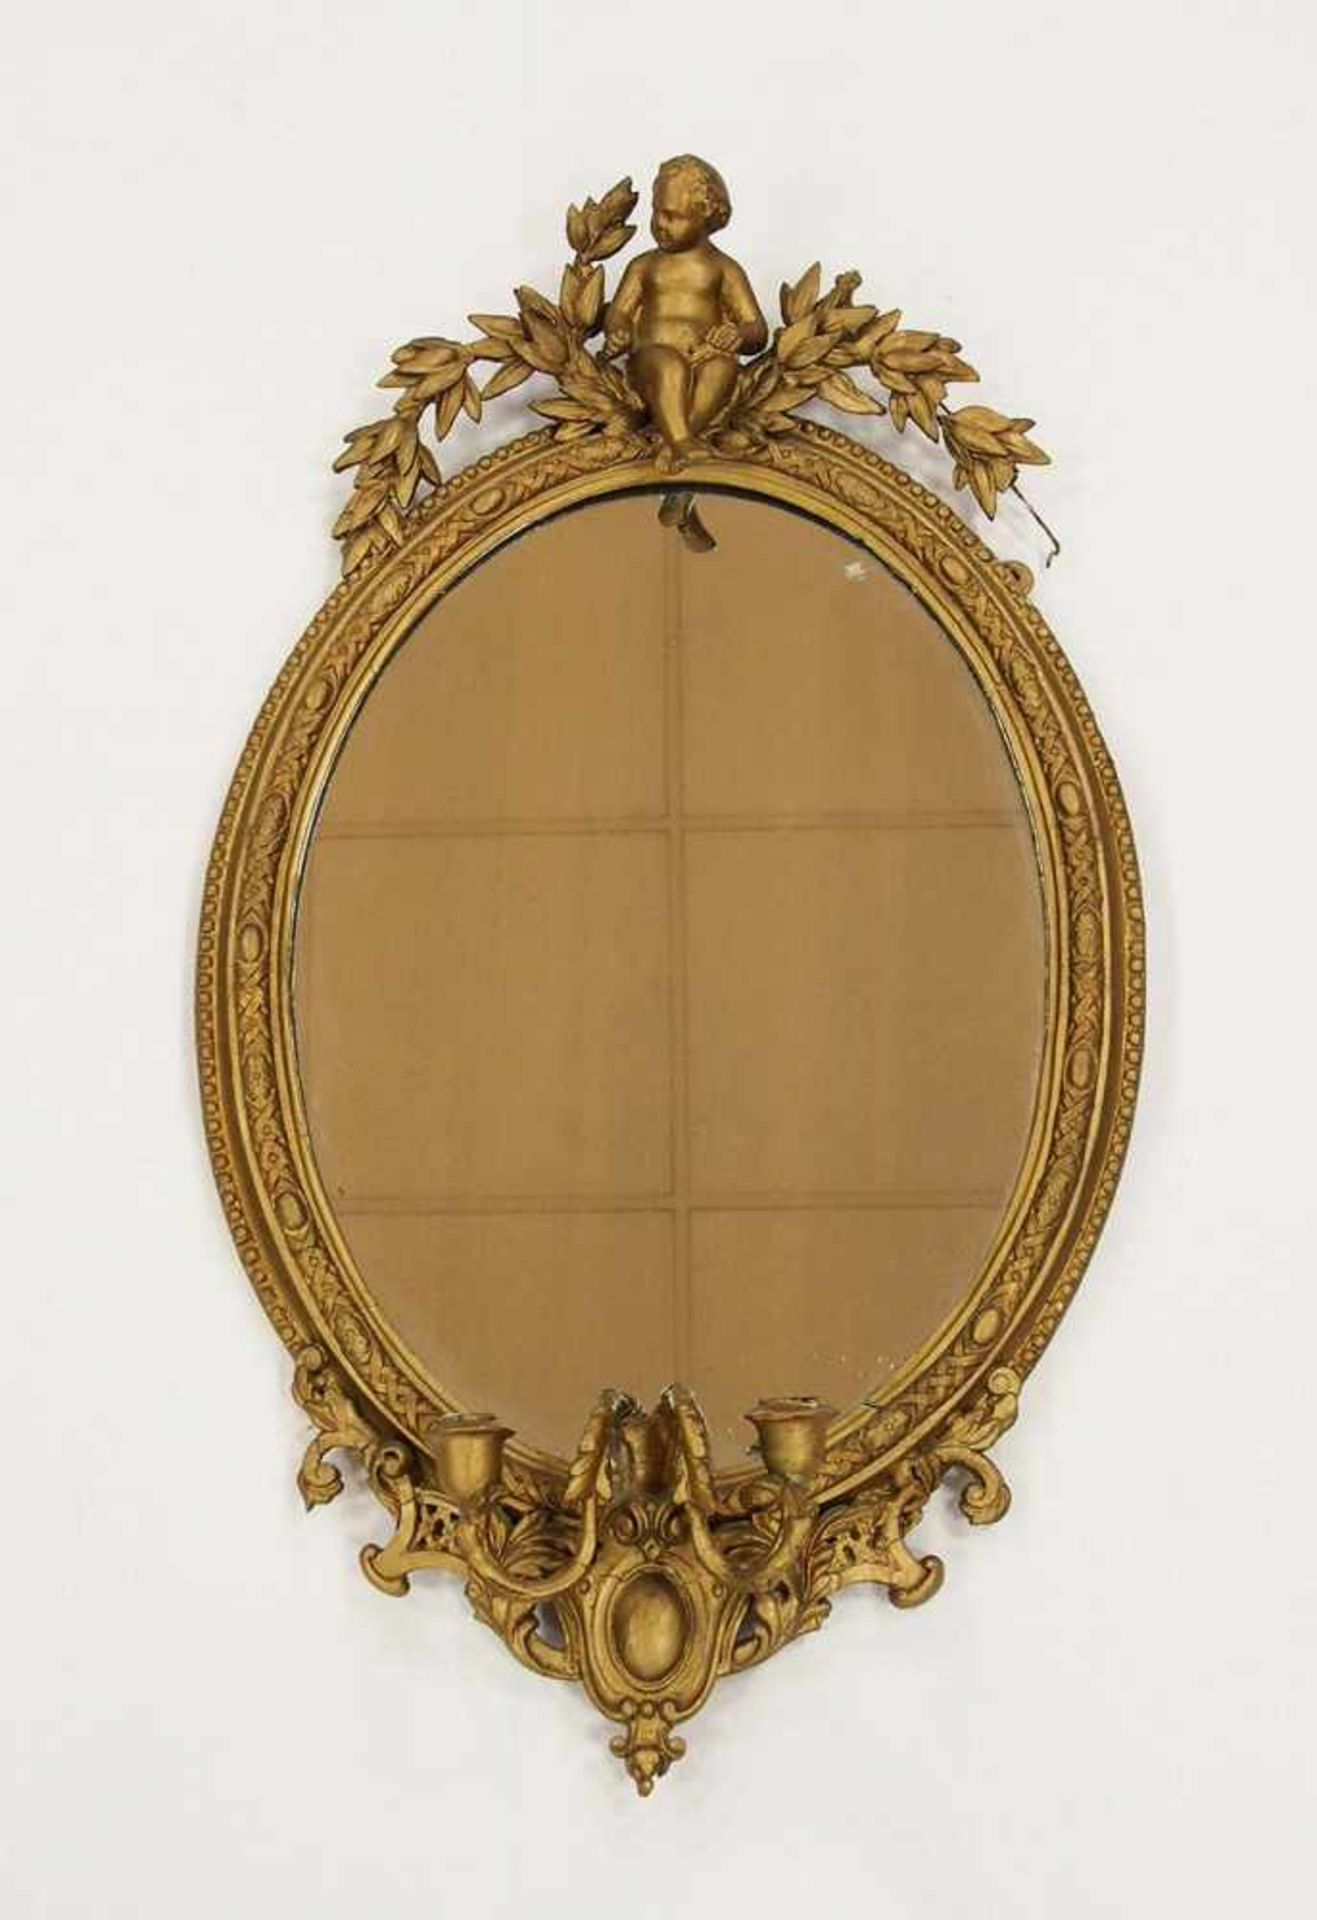 SpiegelRahmen, Holz geschnitzt mit Putto, zweiarmiger Leuchter, Stuck, bronziert, 90 x 50 cm (oval),